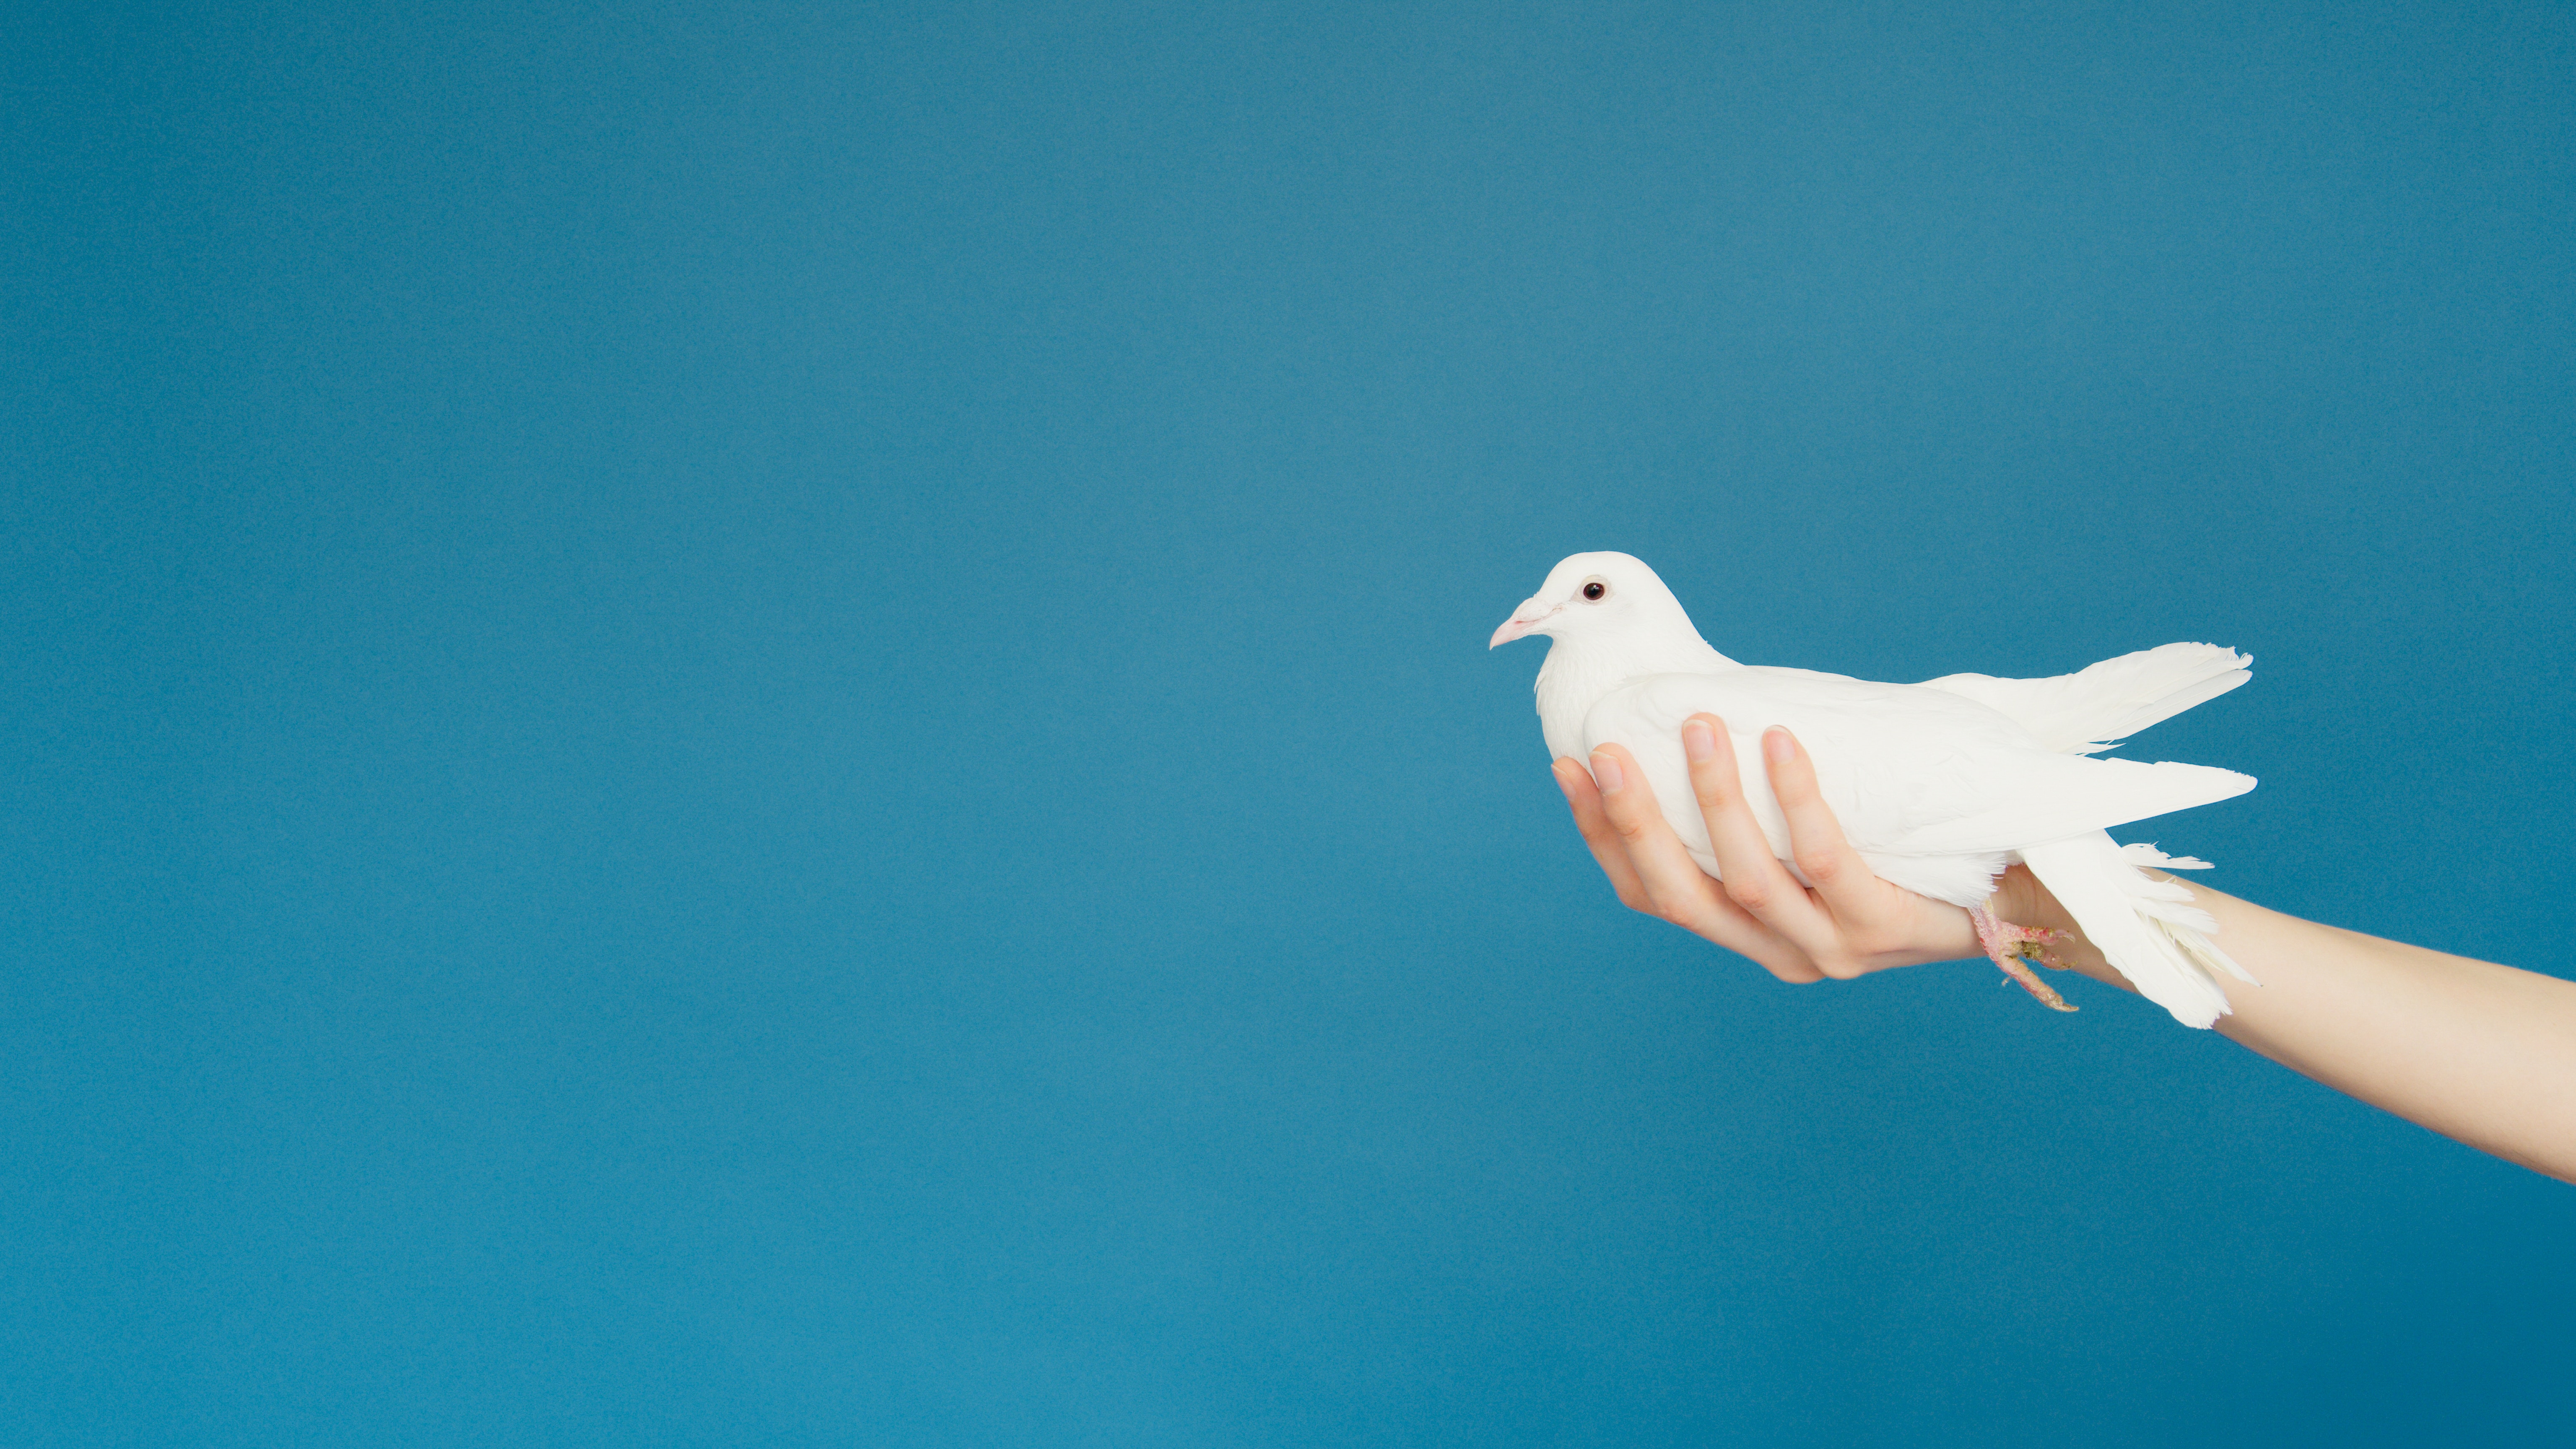 Una mano cupa una paloma blanca y se extiende hacia adelante como si ofreciera la paloma.